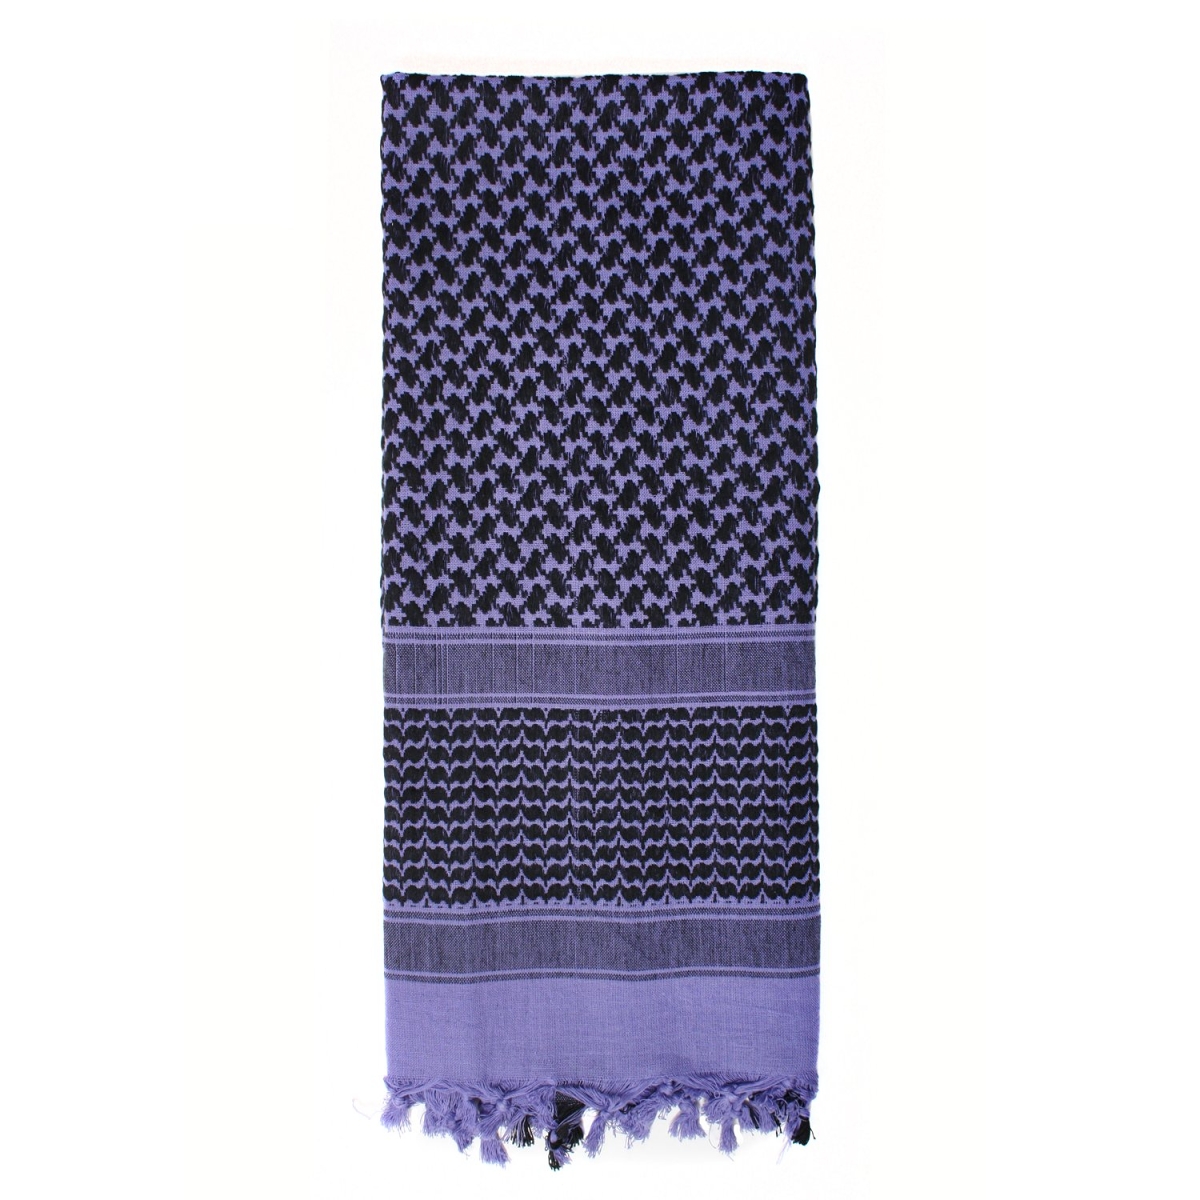 šátek Shemag Palestina fialovo/černý